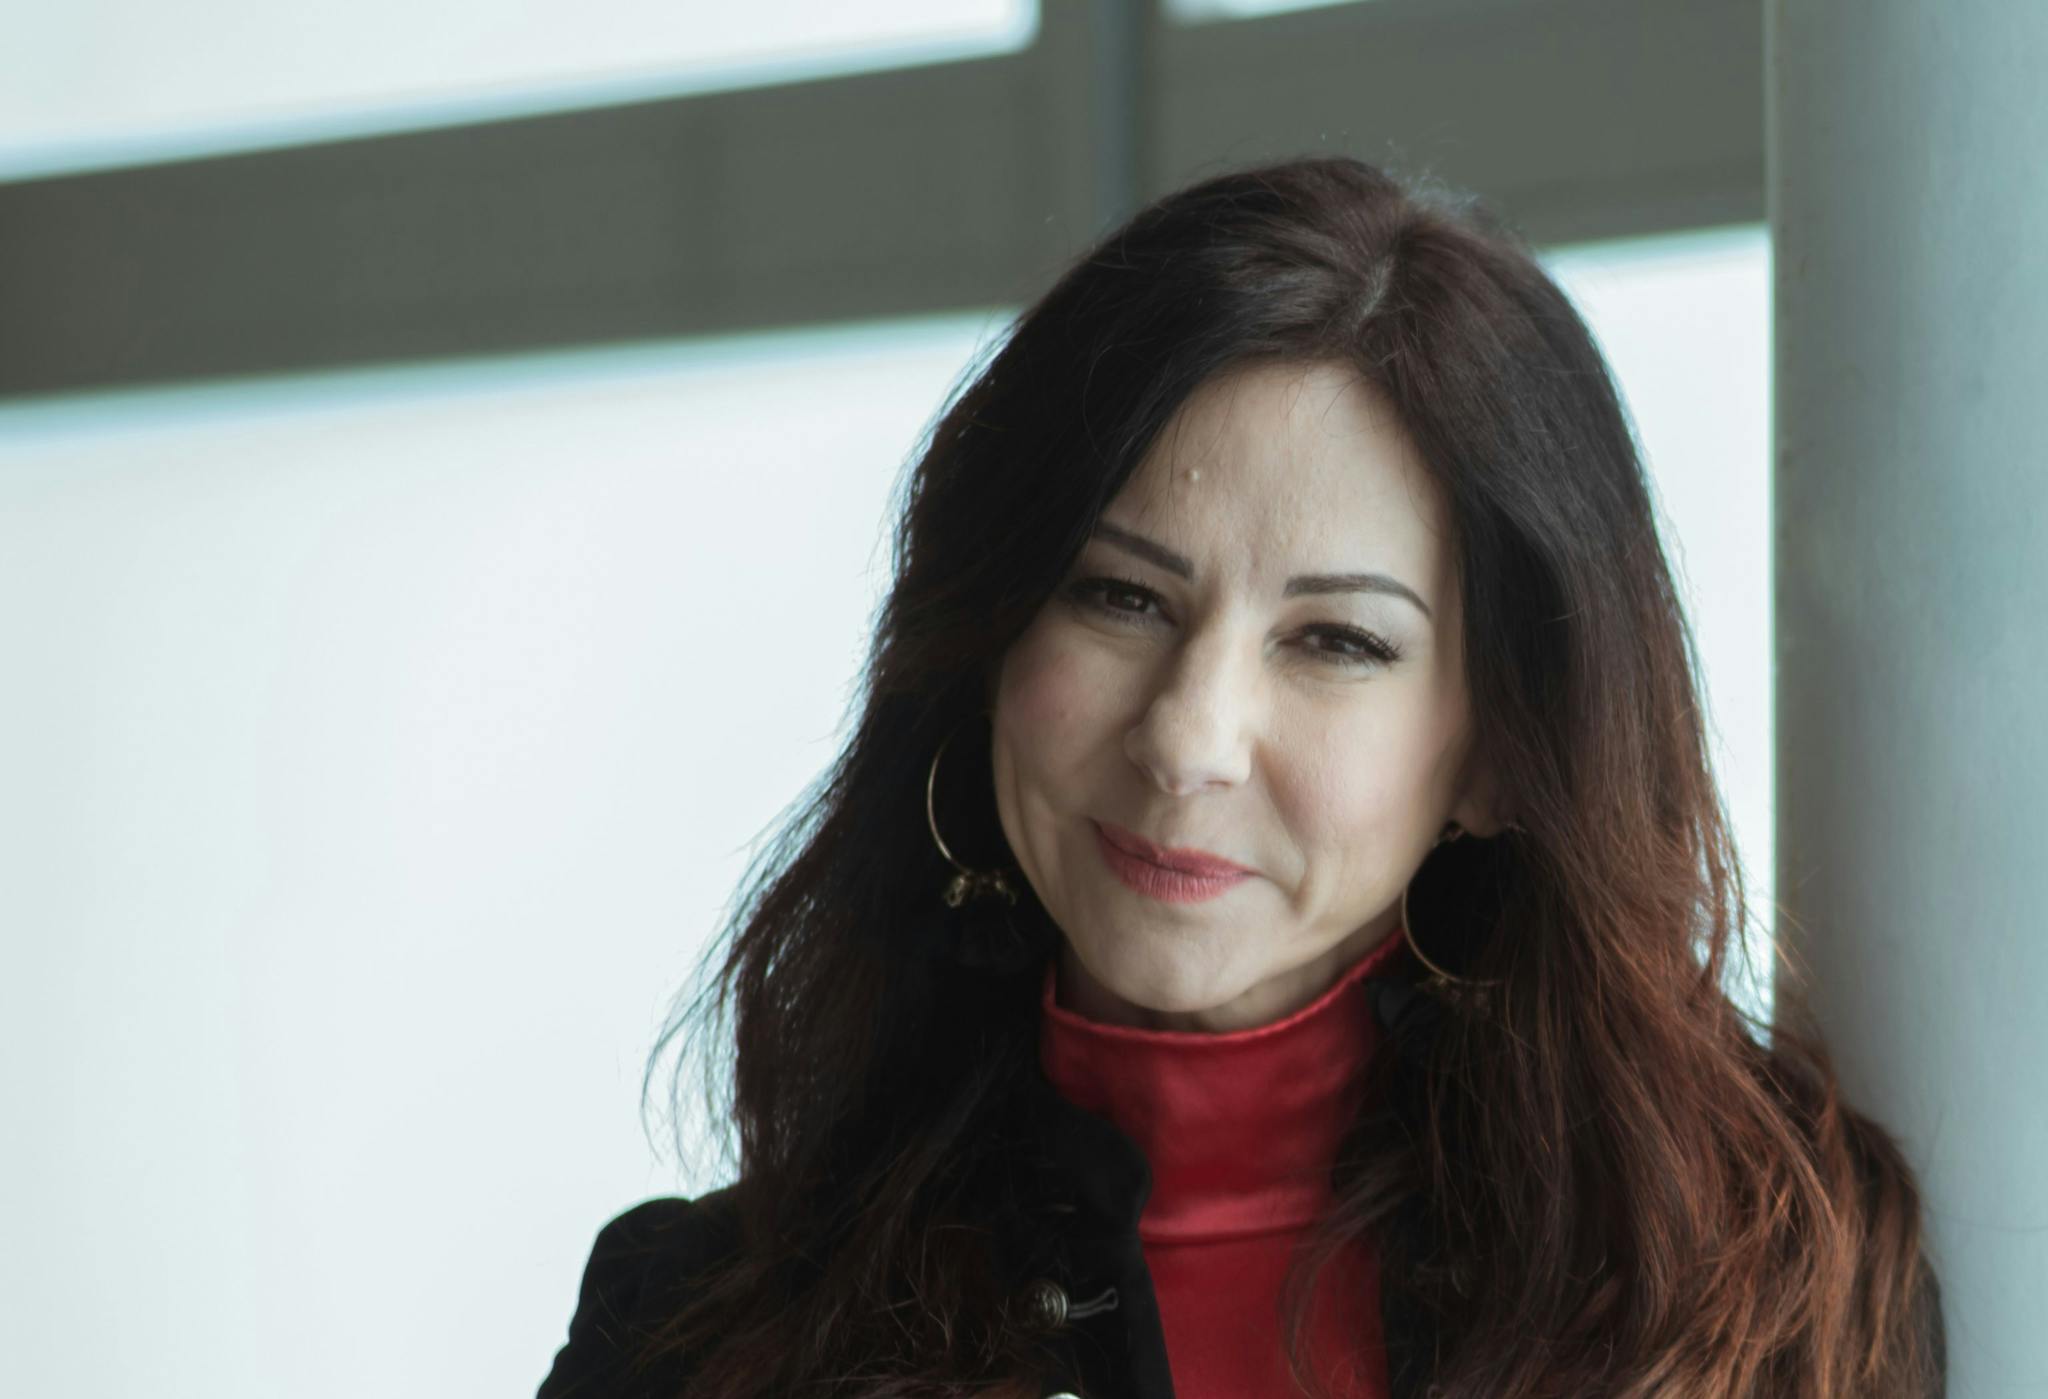 La guionista, creadora y productora Esther Martínez Lobato